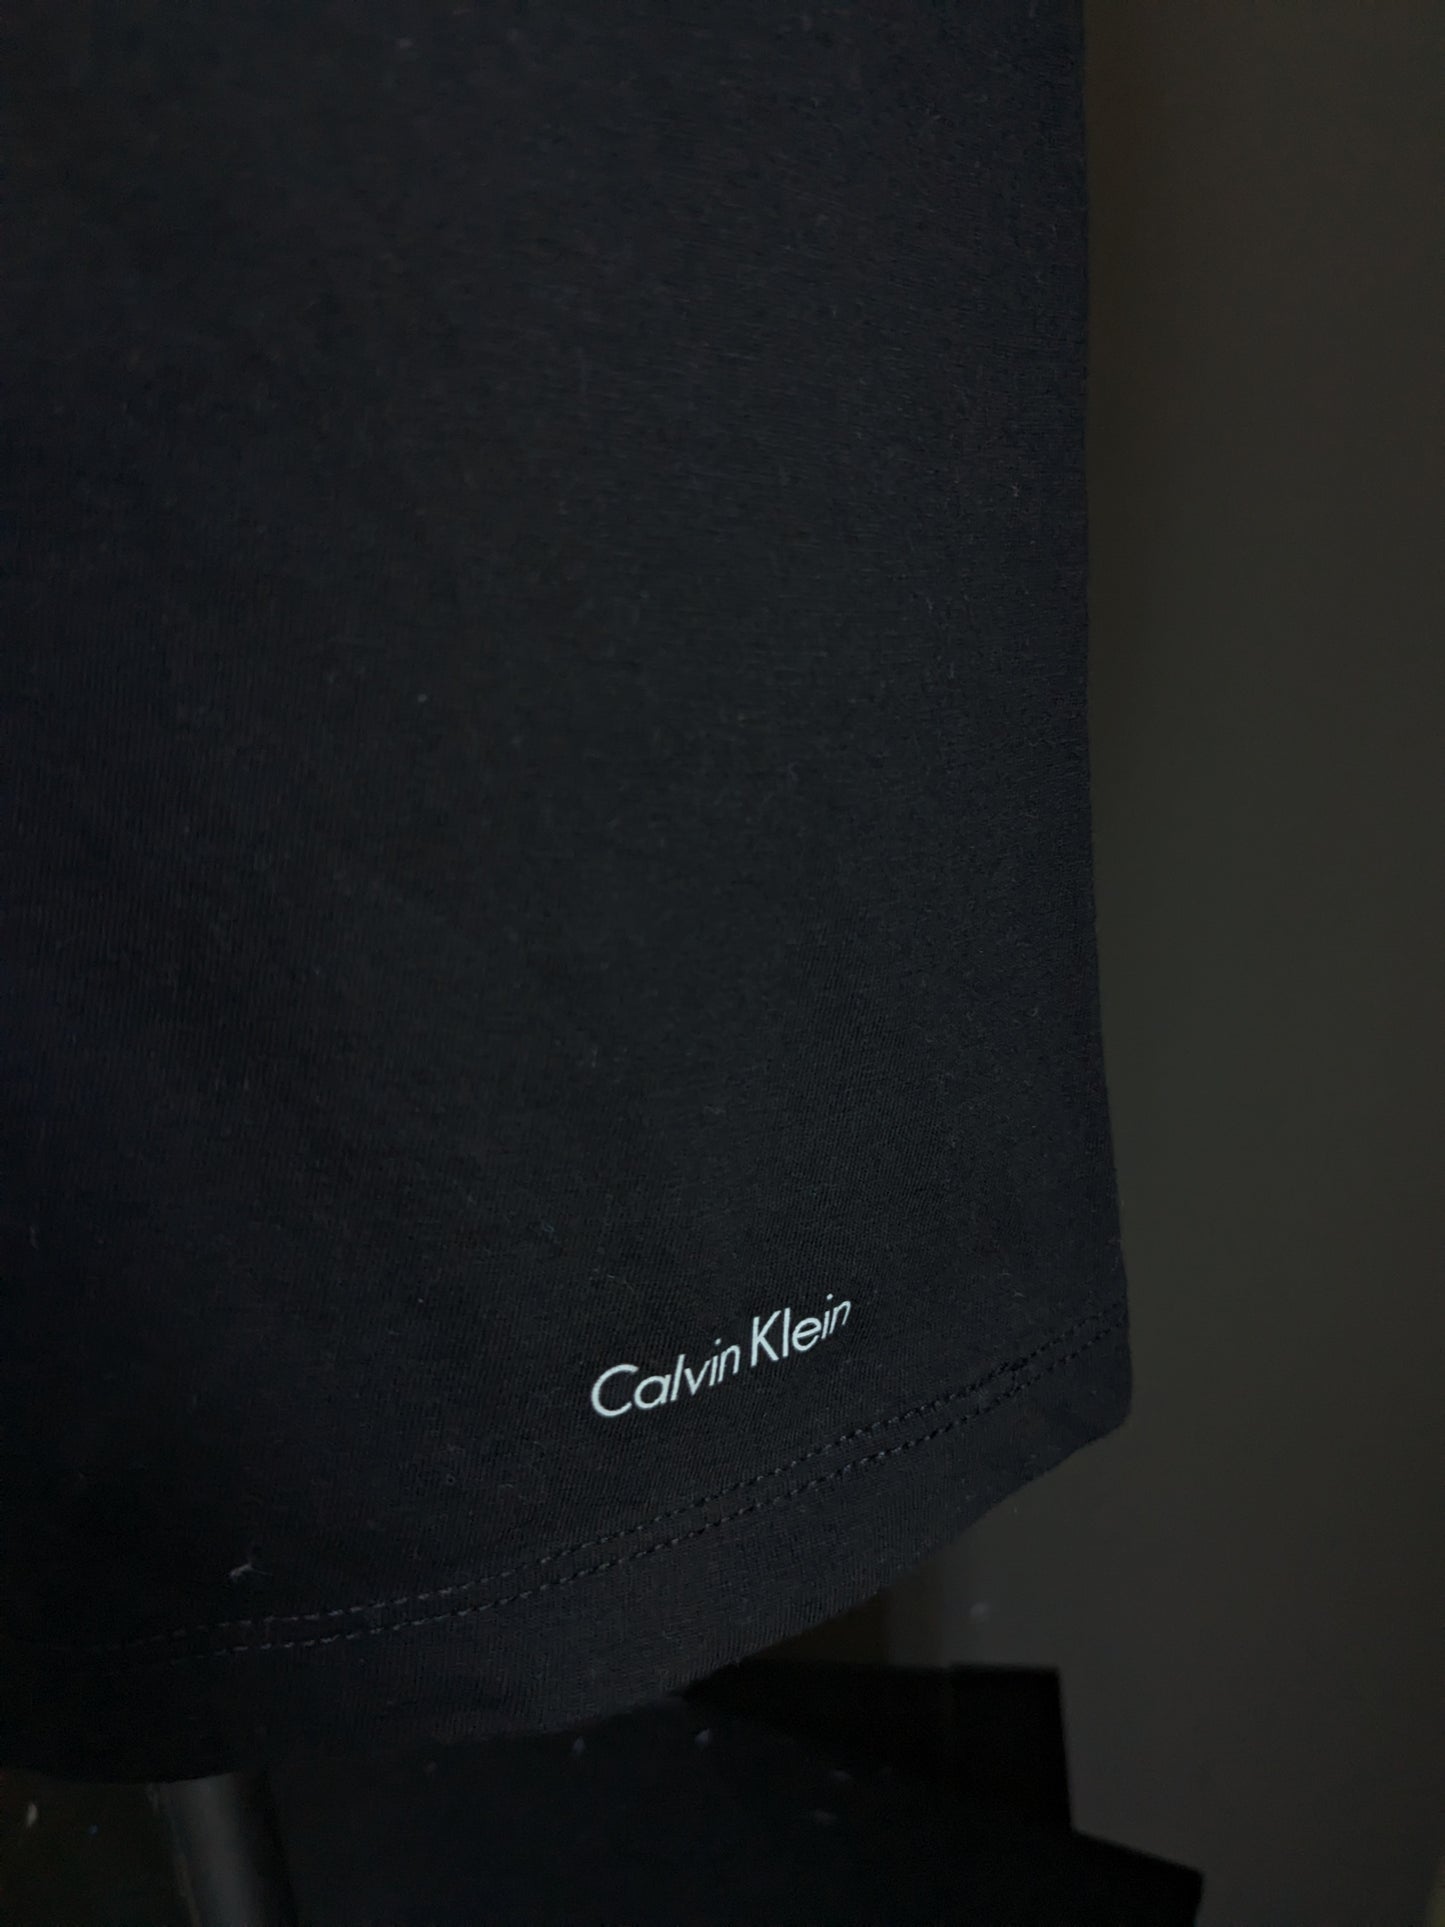 Calvin kleines Hemd. Schwarz gefärbt. Größe M.